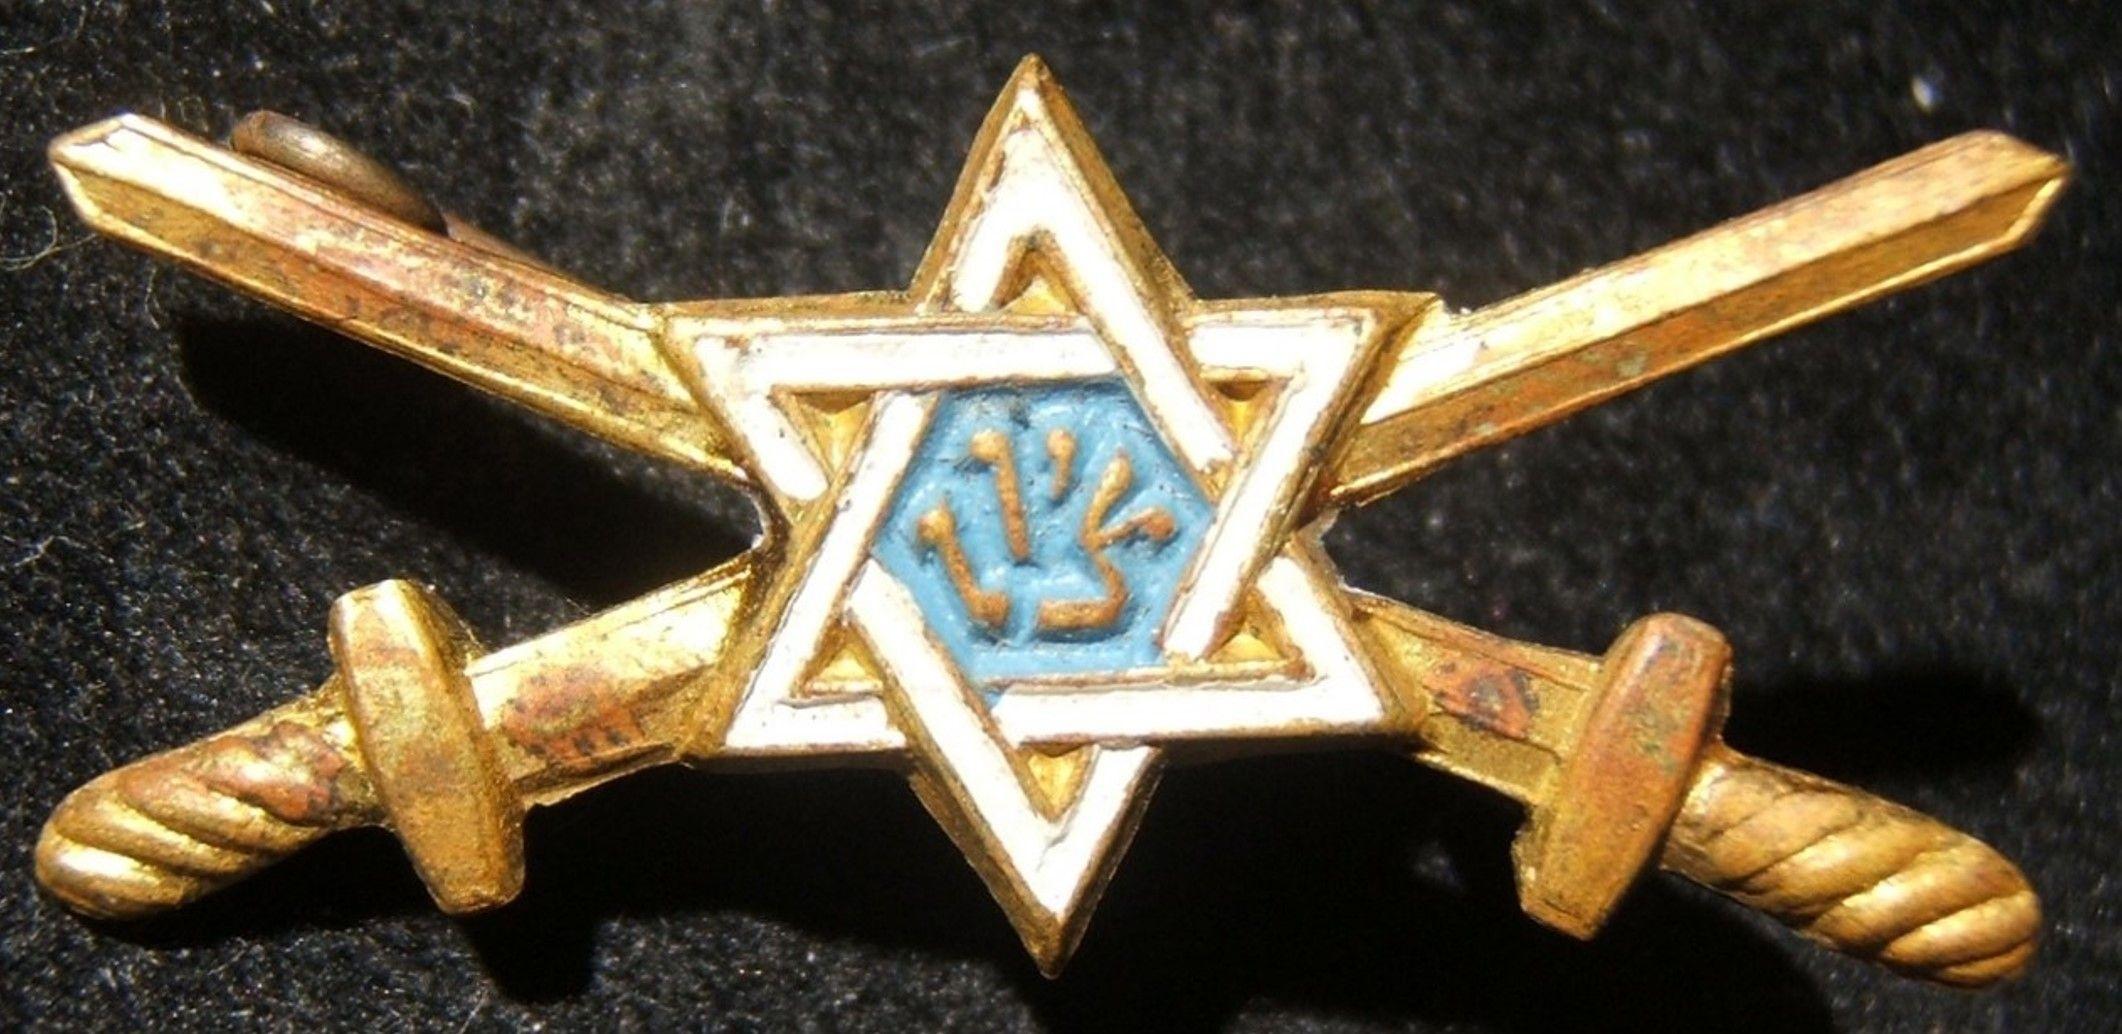 Crossed C Logo - Eretz Israel Yishuv Undocumented Military Organization Emblem Pin, C